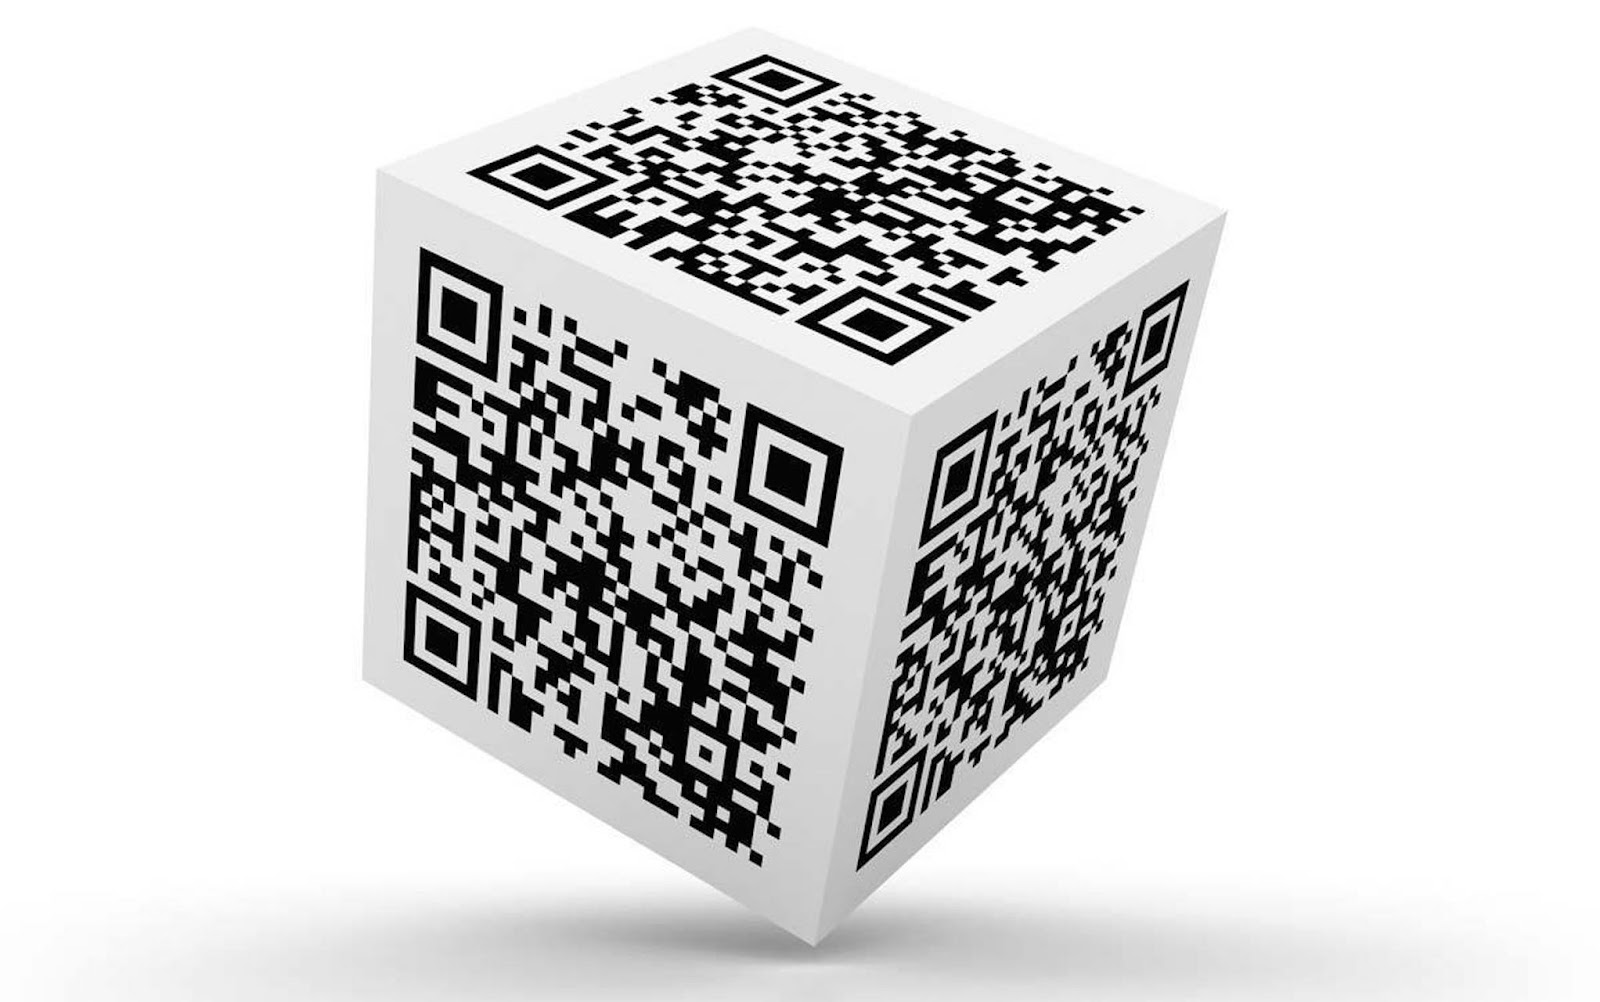 Цифровой qr код. Генератор кьюар кода. Куб с QR кодом. Изображение QR кода. Объемный QR код.